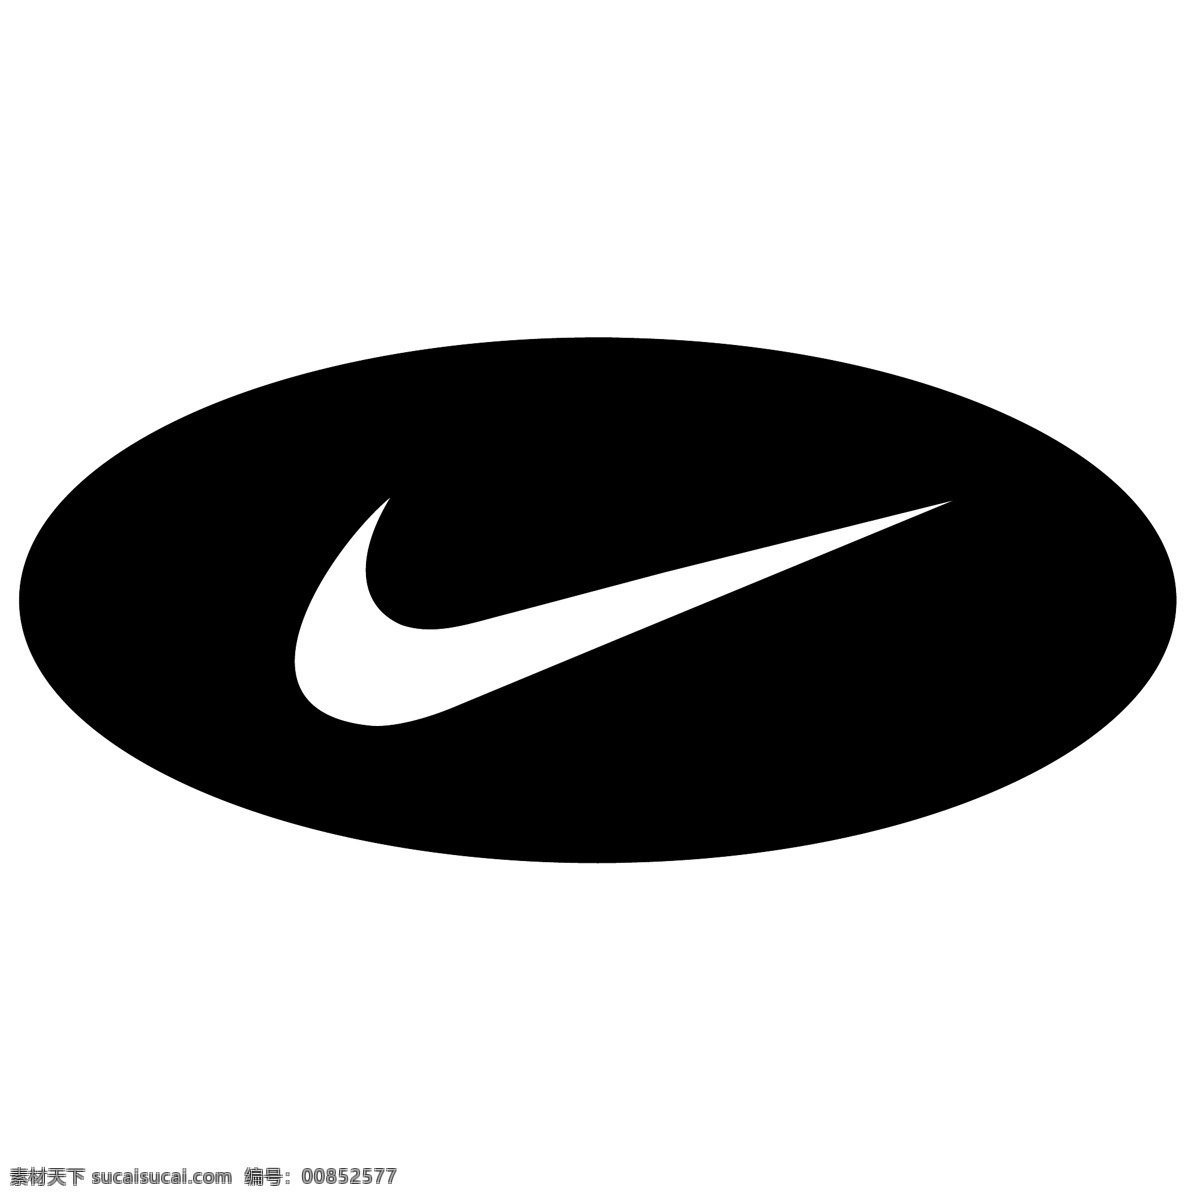 耐克 logo 黑白 黑白logo 耐克logo nike 标志图标 企业 标志